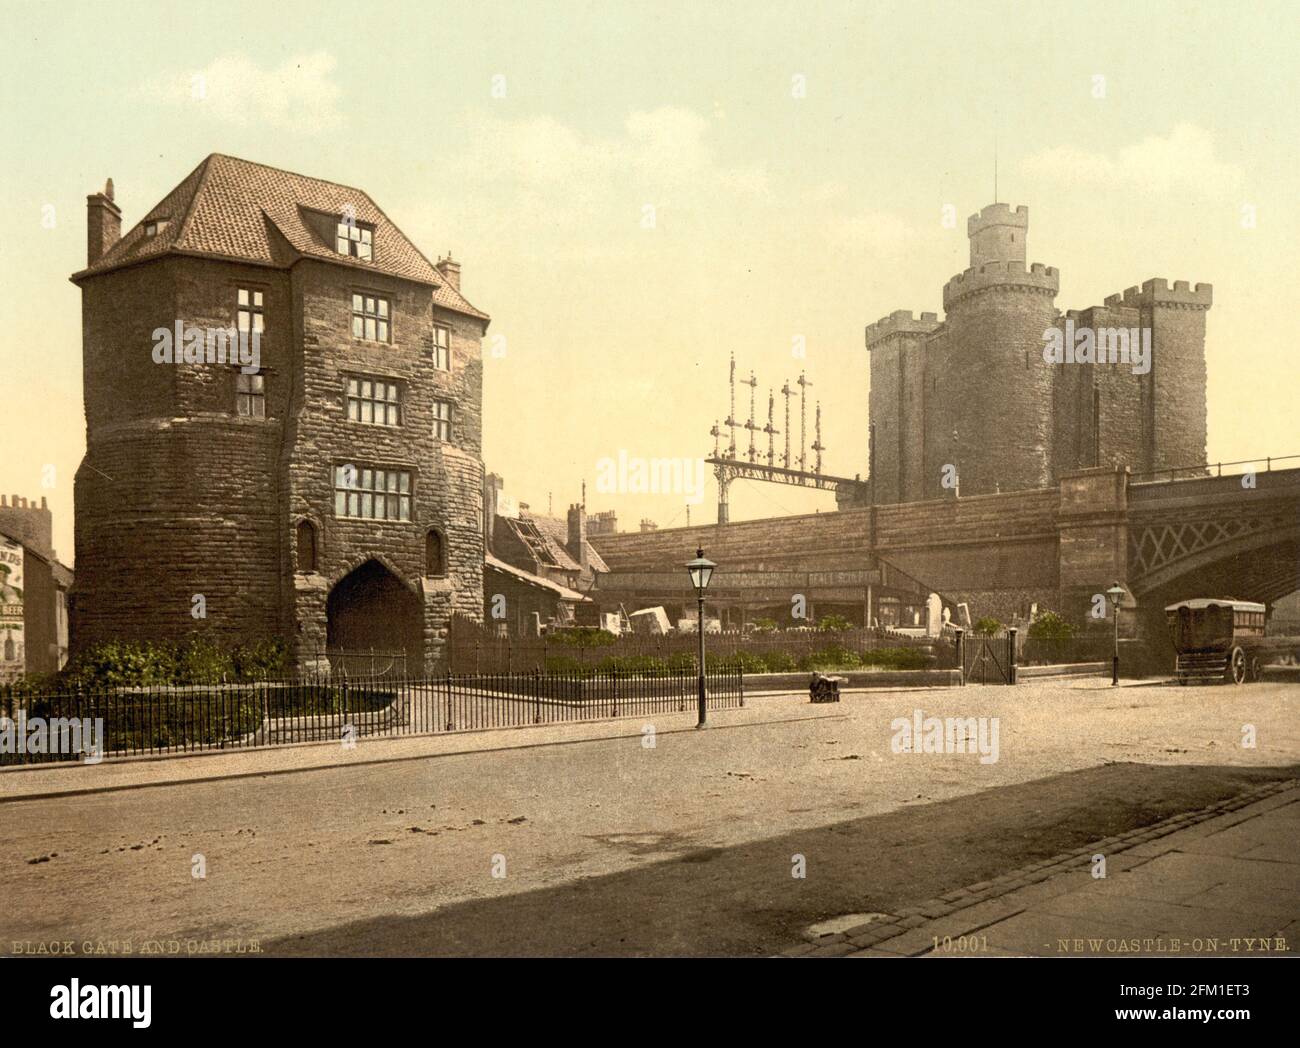 La porte noire et le donjon du château, Newcastle-upon-Tyne, vers 1890-1900 Banque D'Images